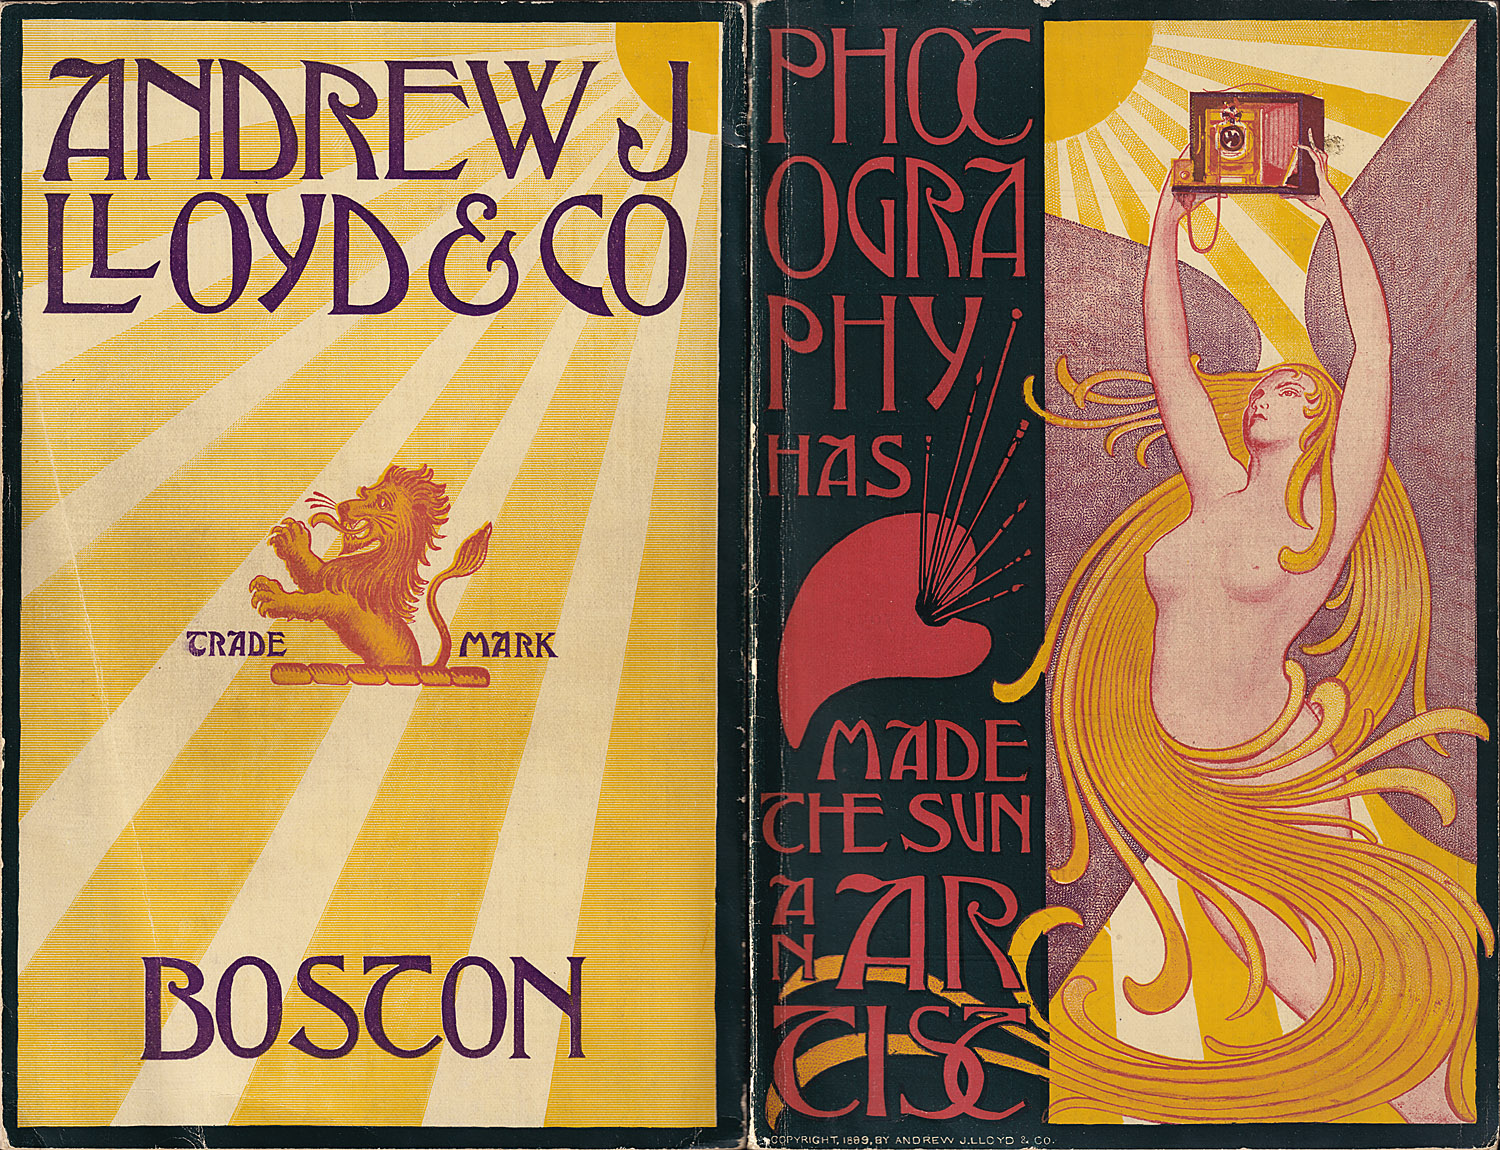 1363.and.lloyd&co.1899-covers-1500.jpg